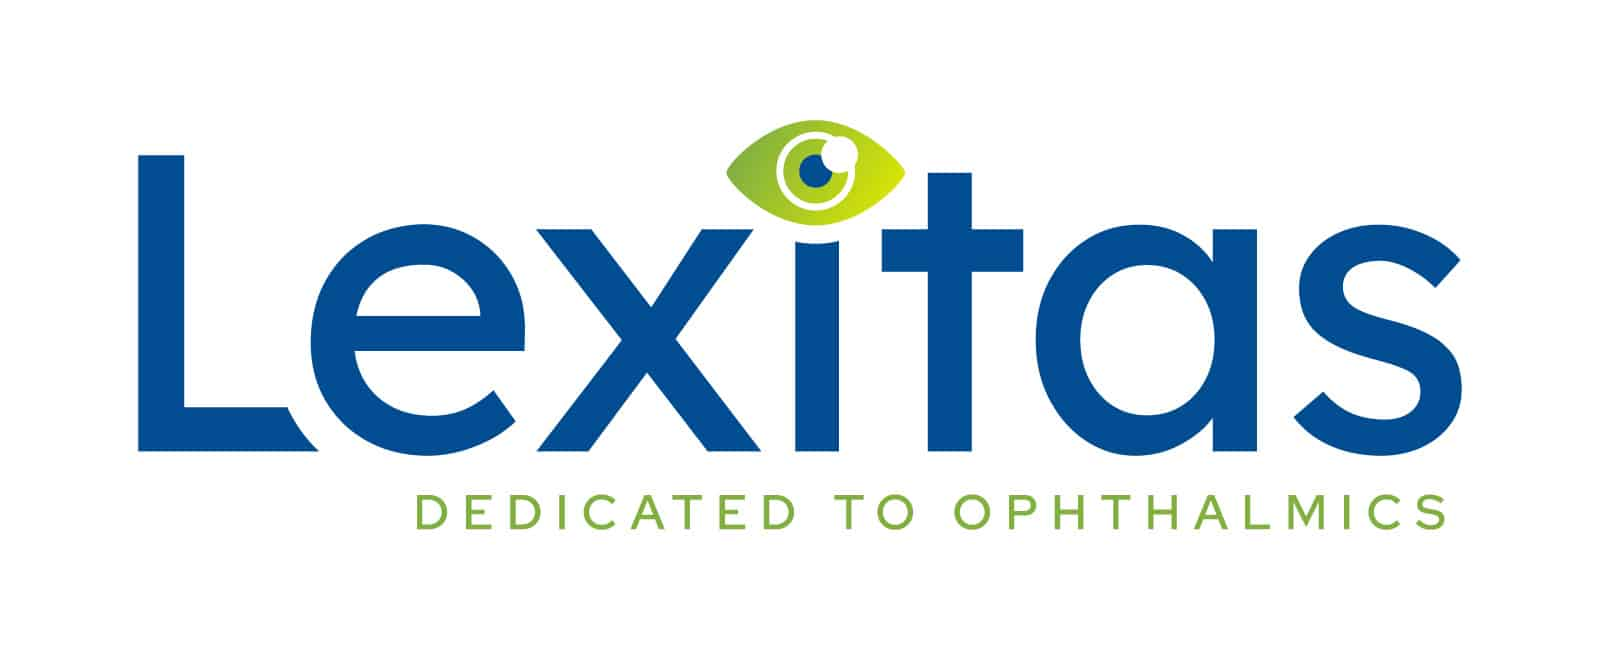 Lexitas Logo